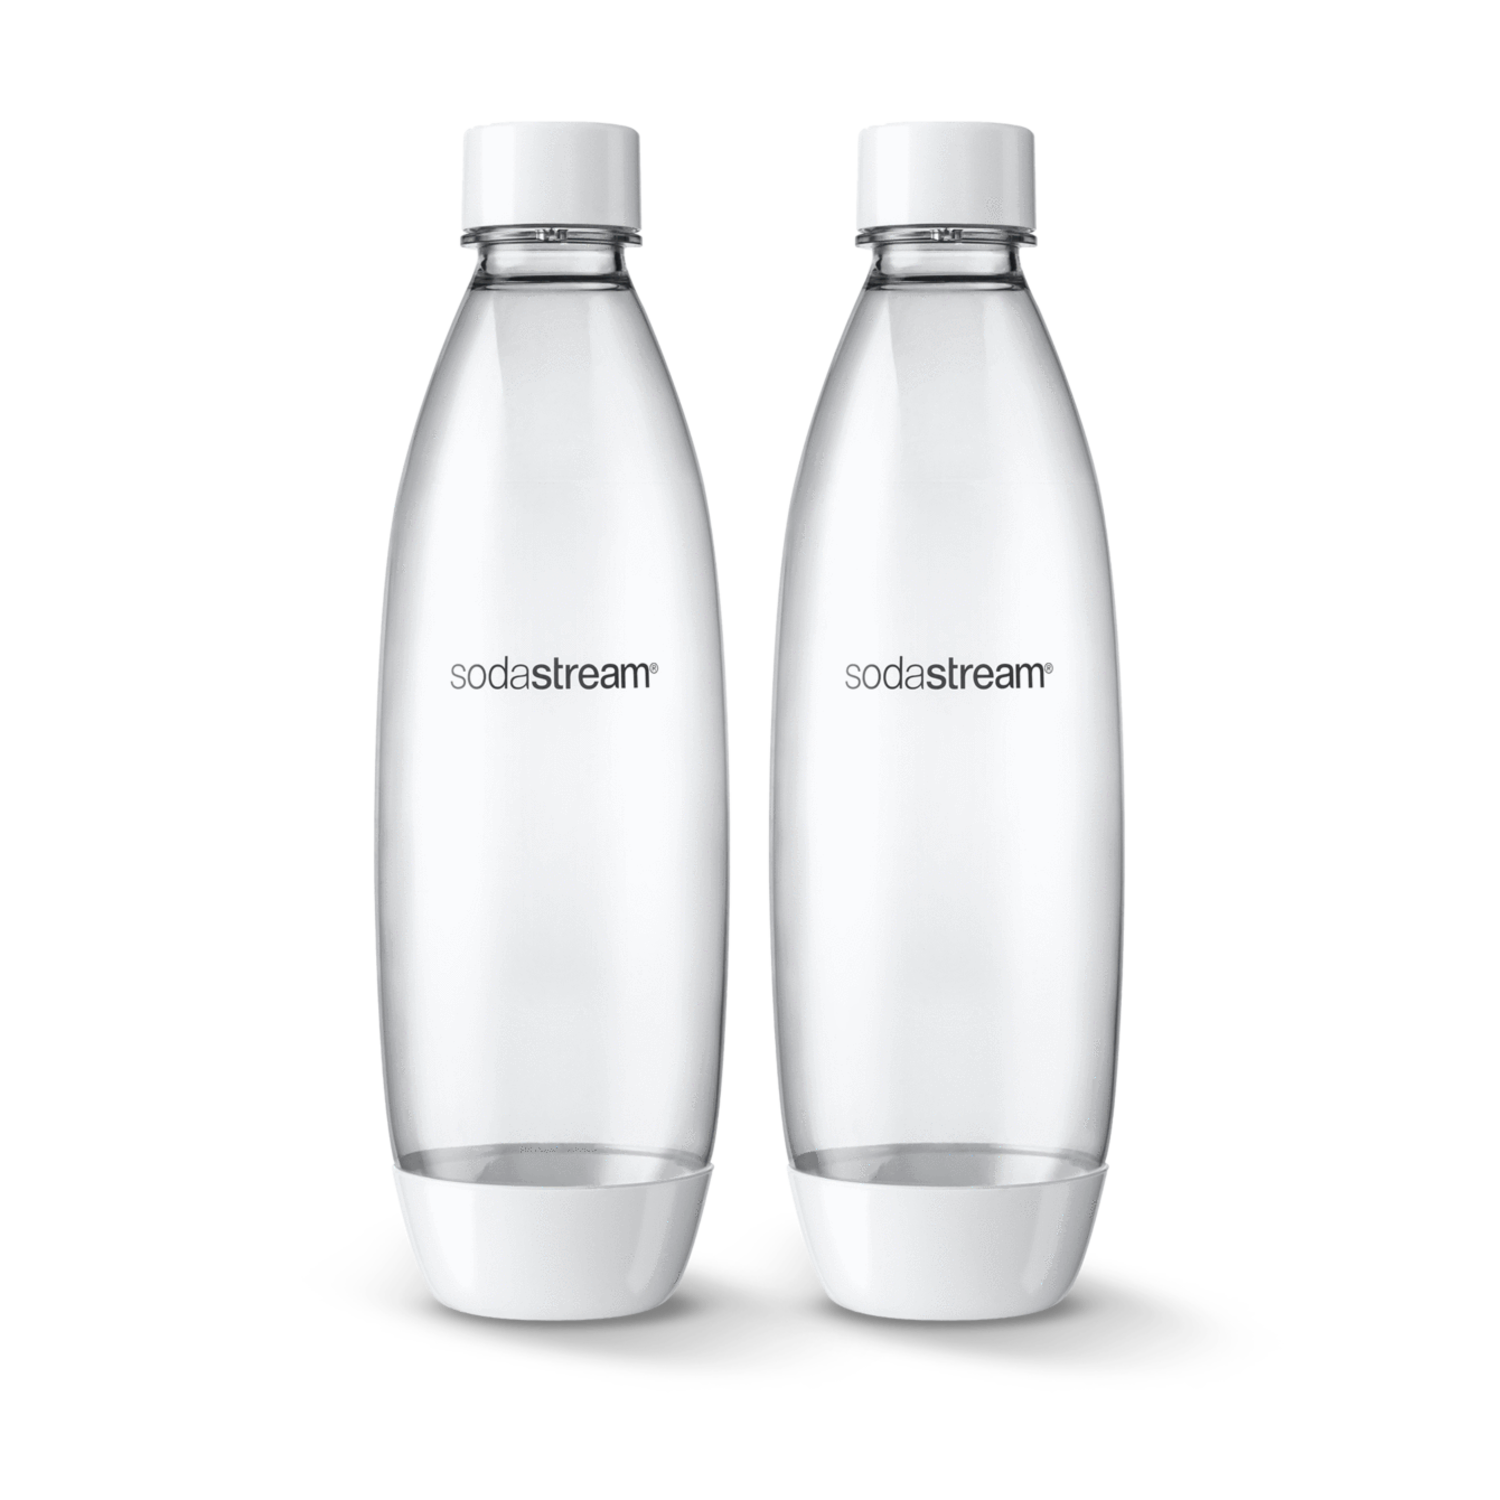 https://cdn.shoplightspeed.com/shops/633447/files/48525909/1500x4000x3/sodastream-1-liter-white-slim-sodastream-bottles-s.jpg